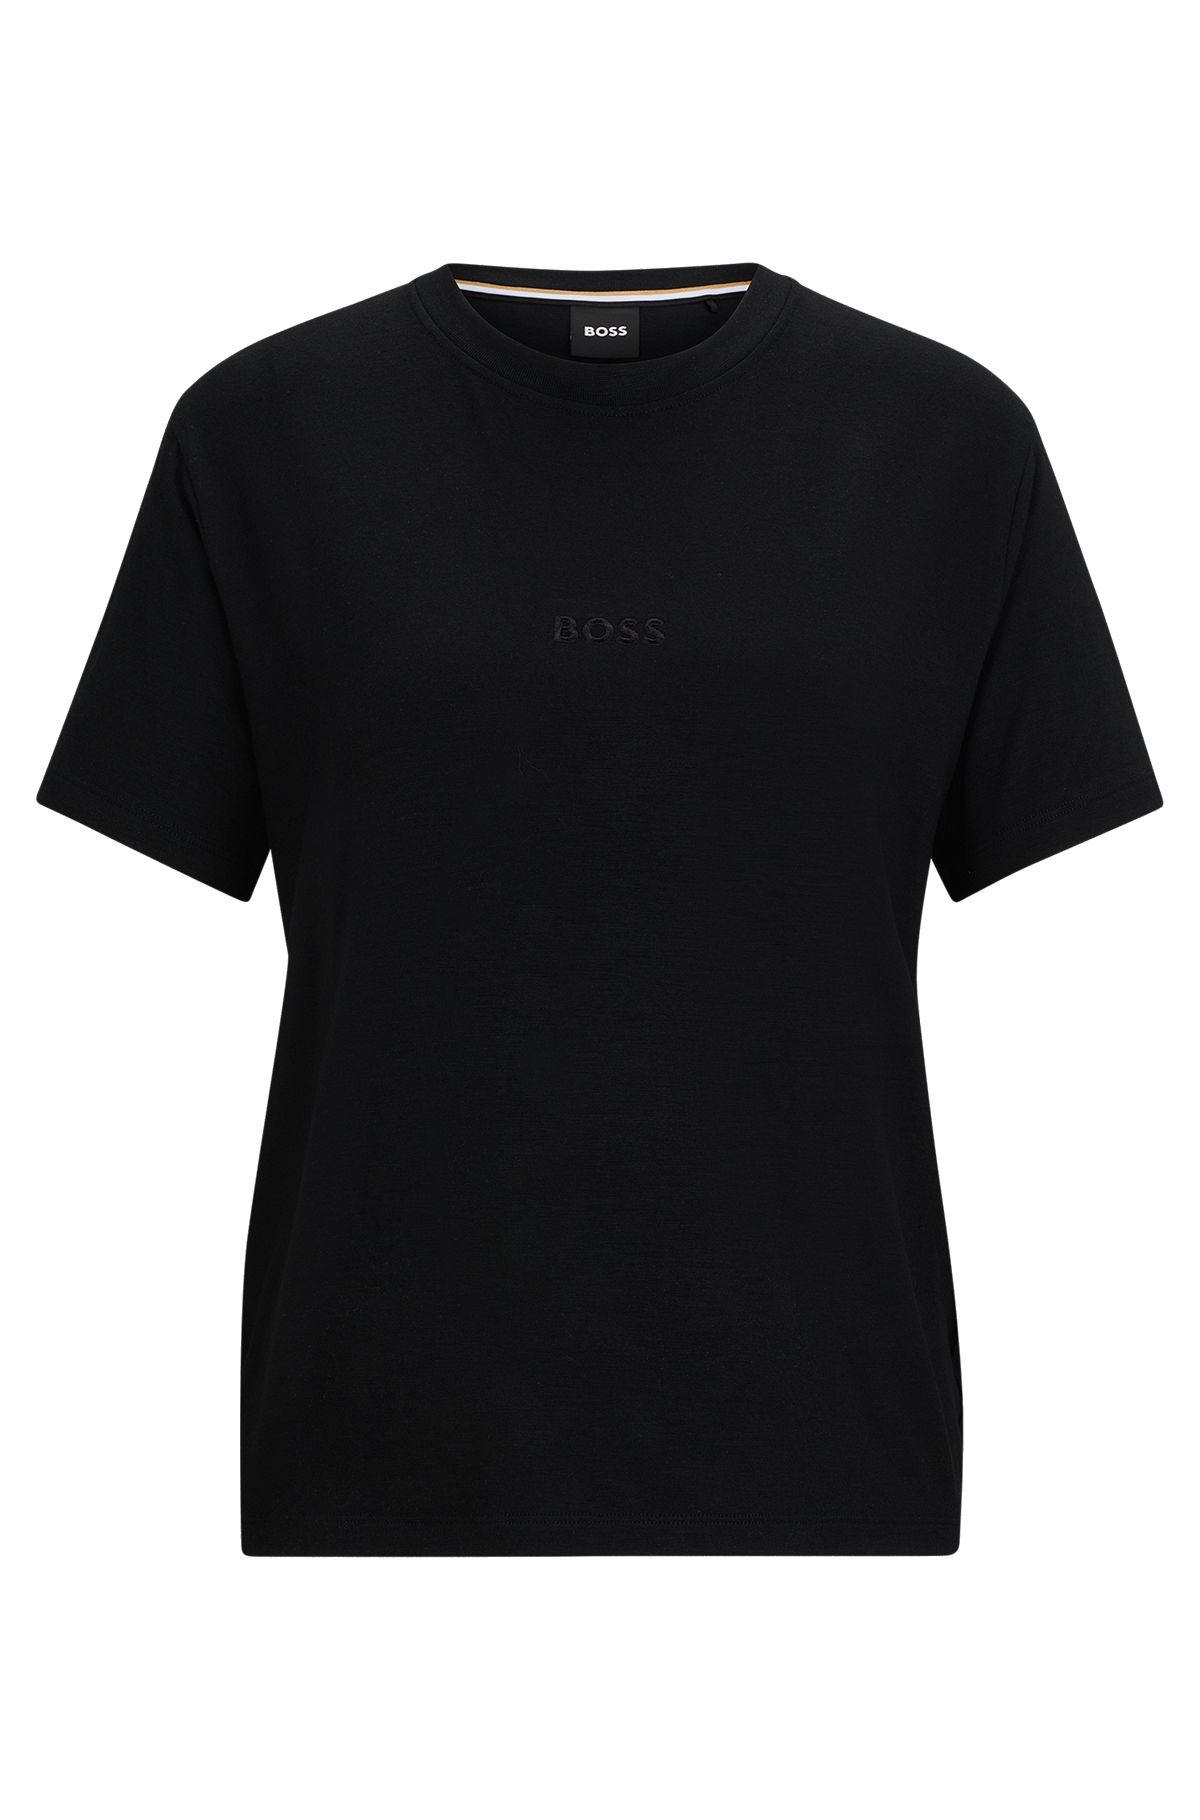 T-shirt Regular en jersey stretch avec logo brodé, Noir